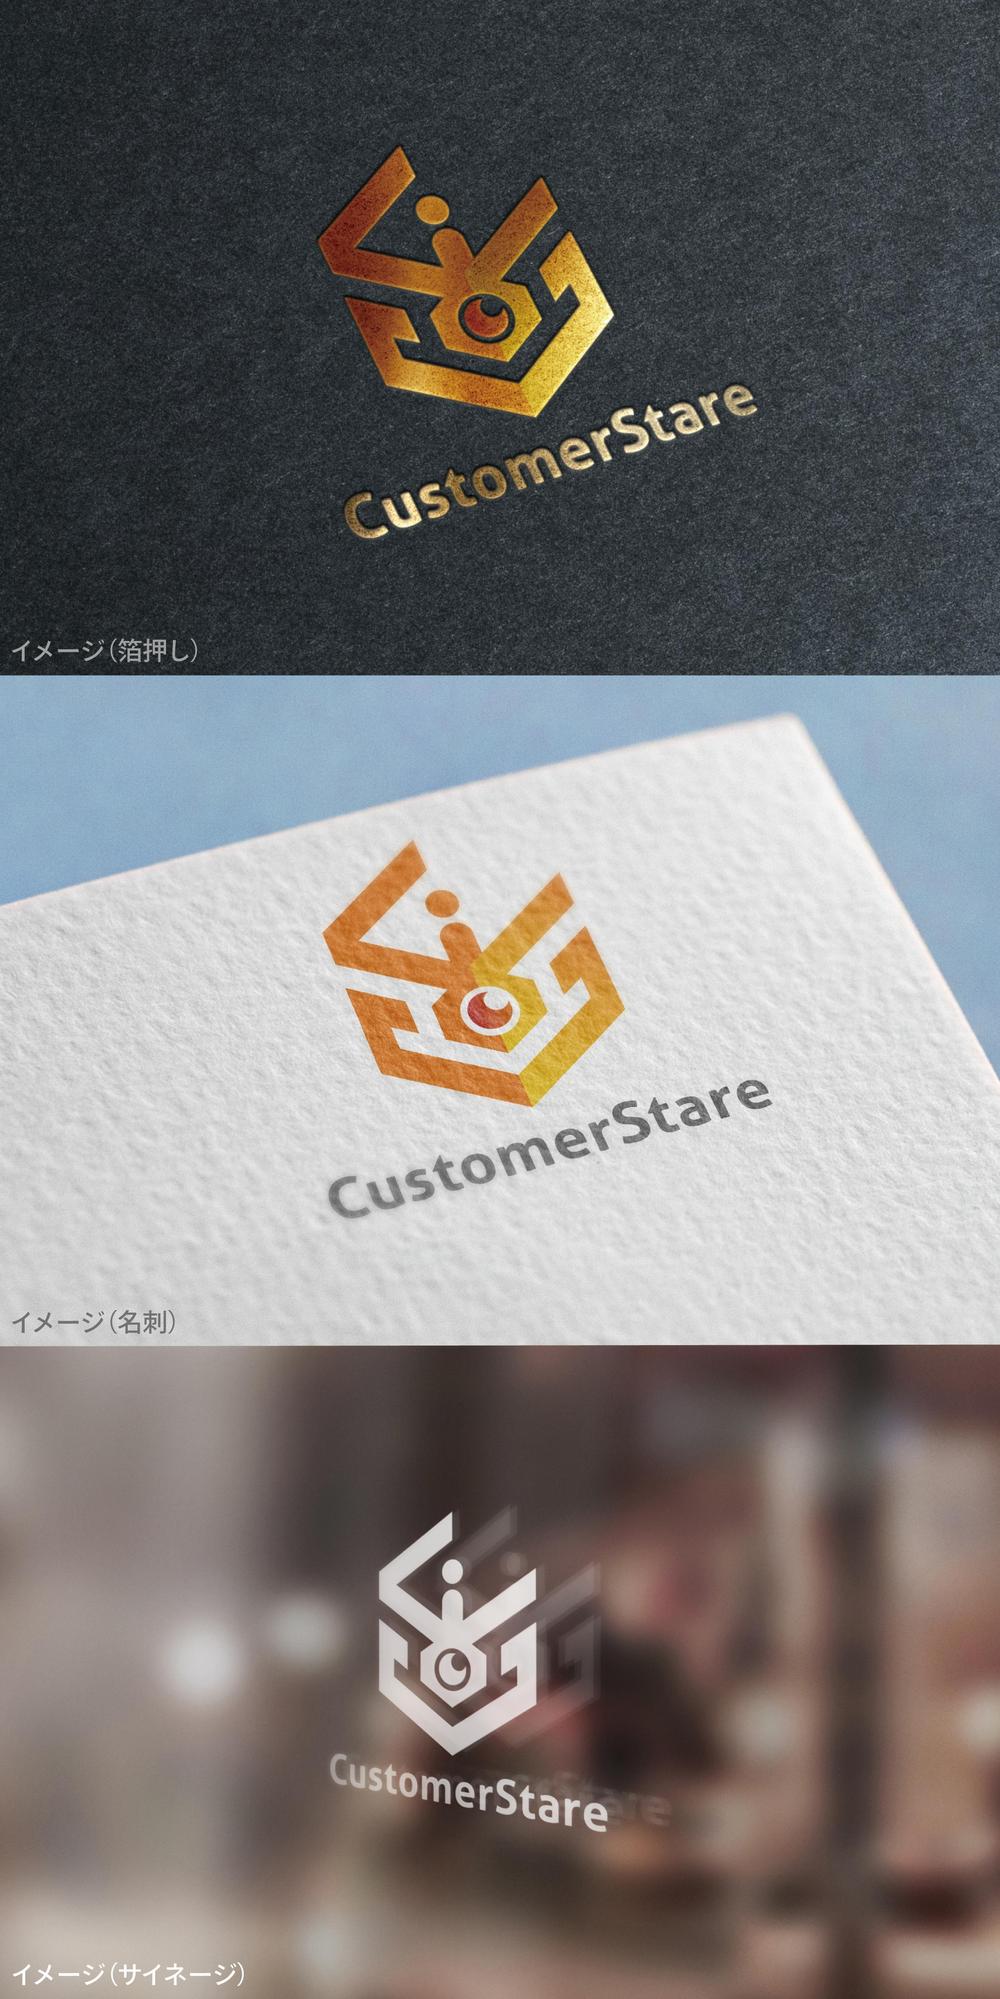 CustomerStare_logo01_01.jpg